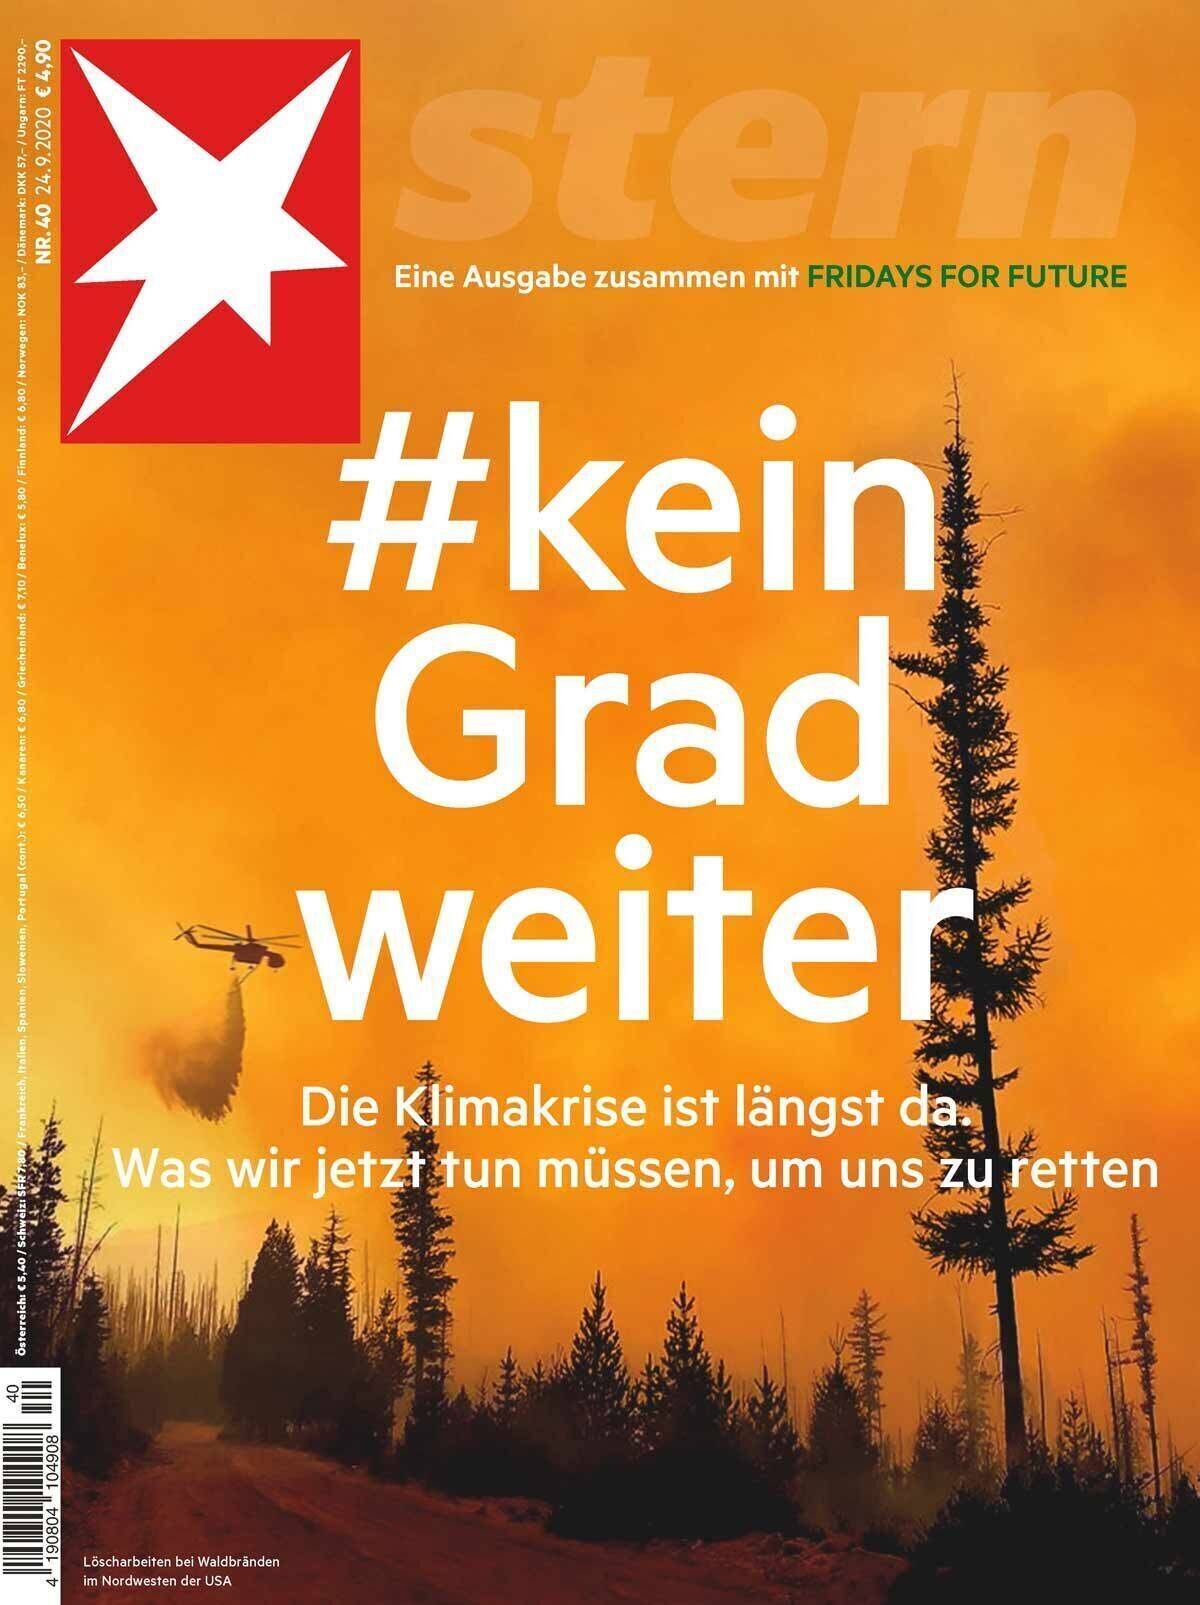 Das Cover der Klimaausgabe.